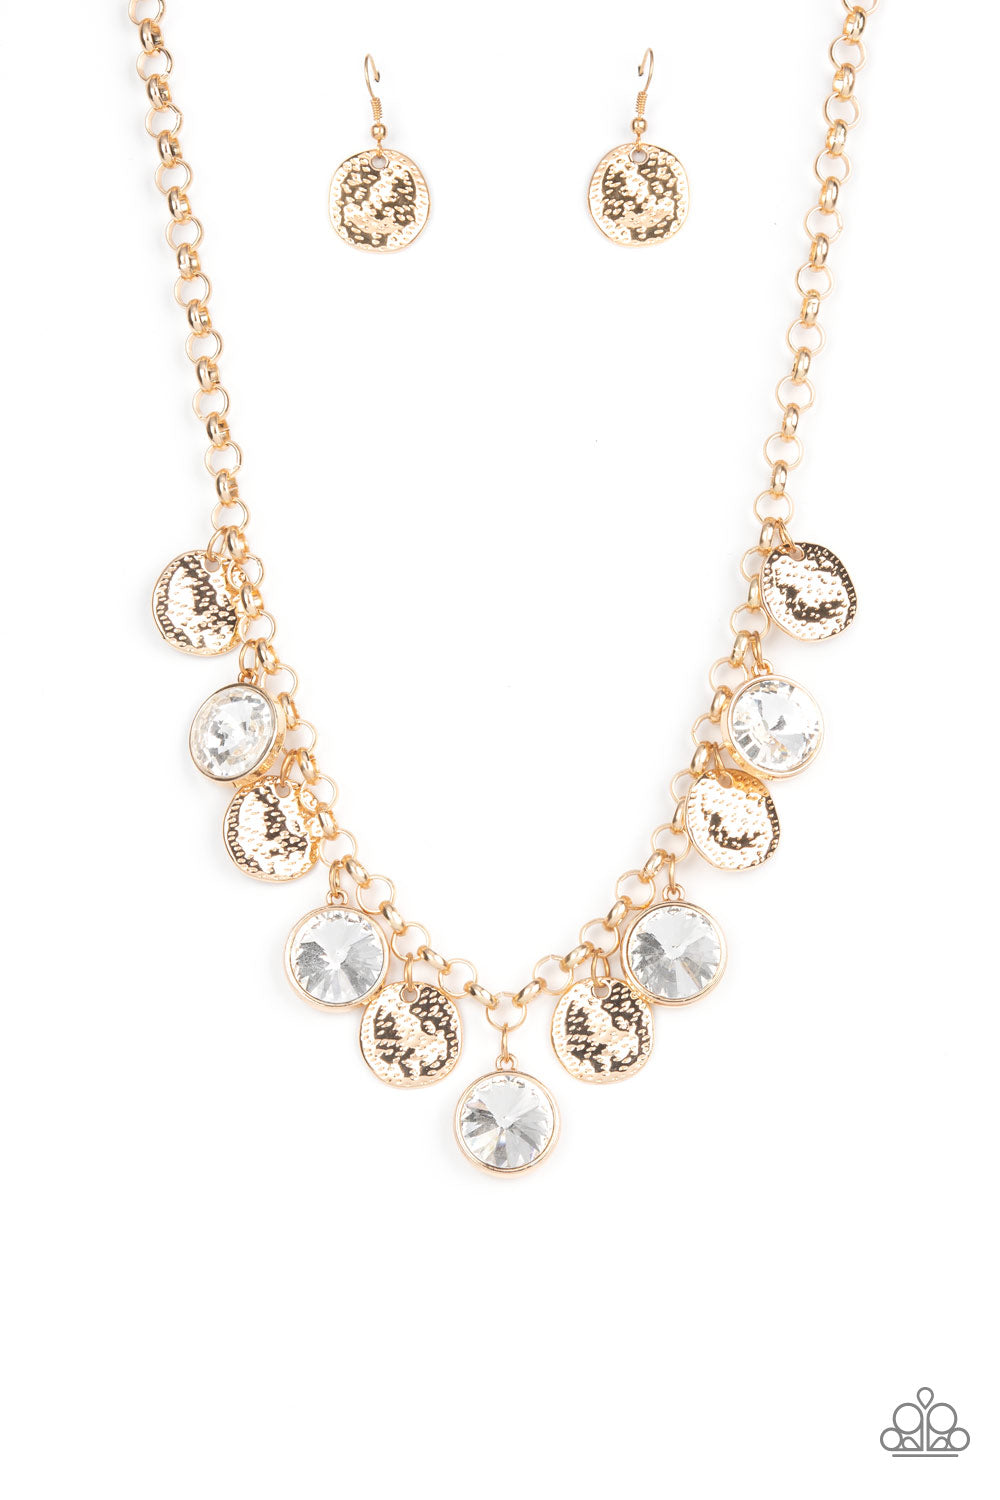 Spot On Sparkle Gold-Necklace